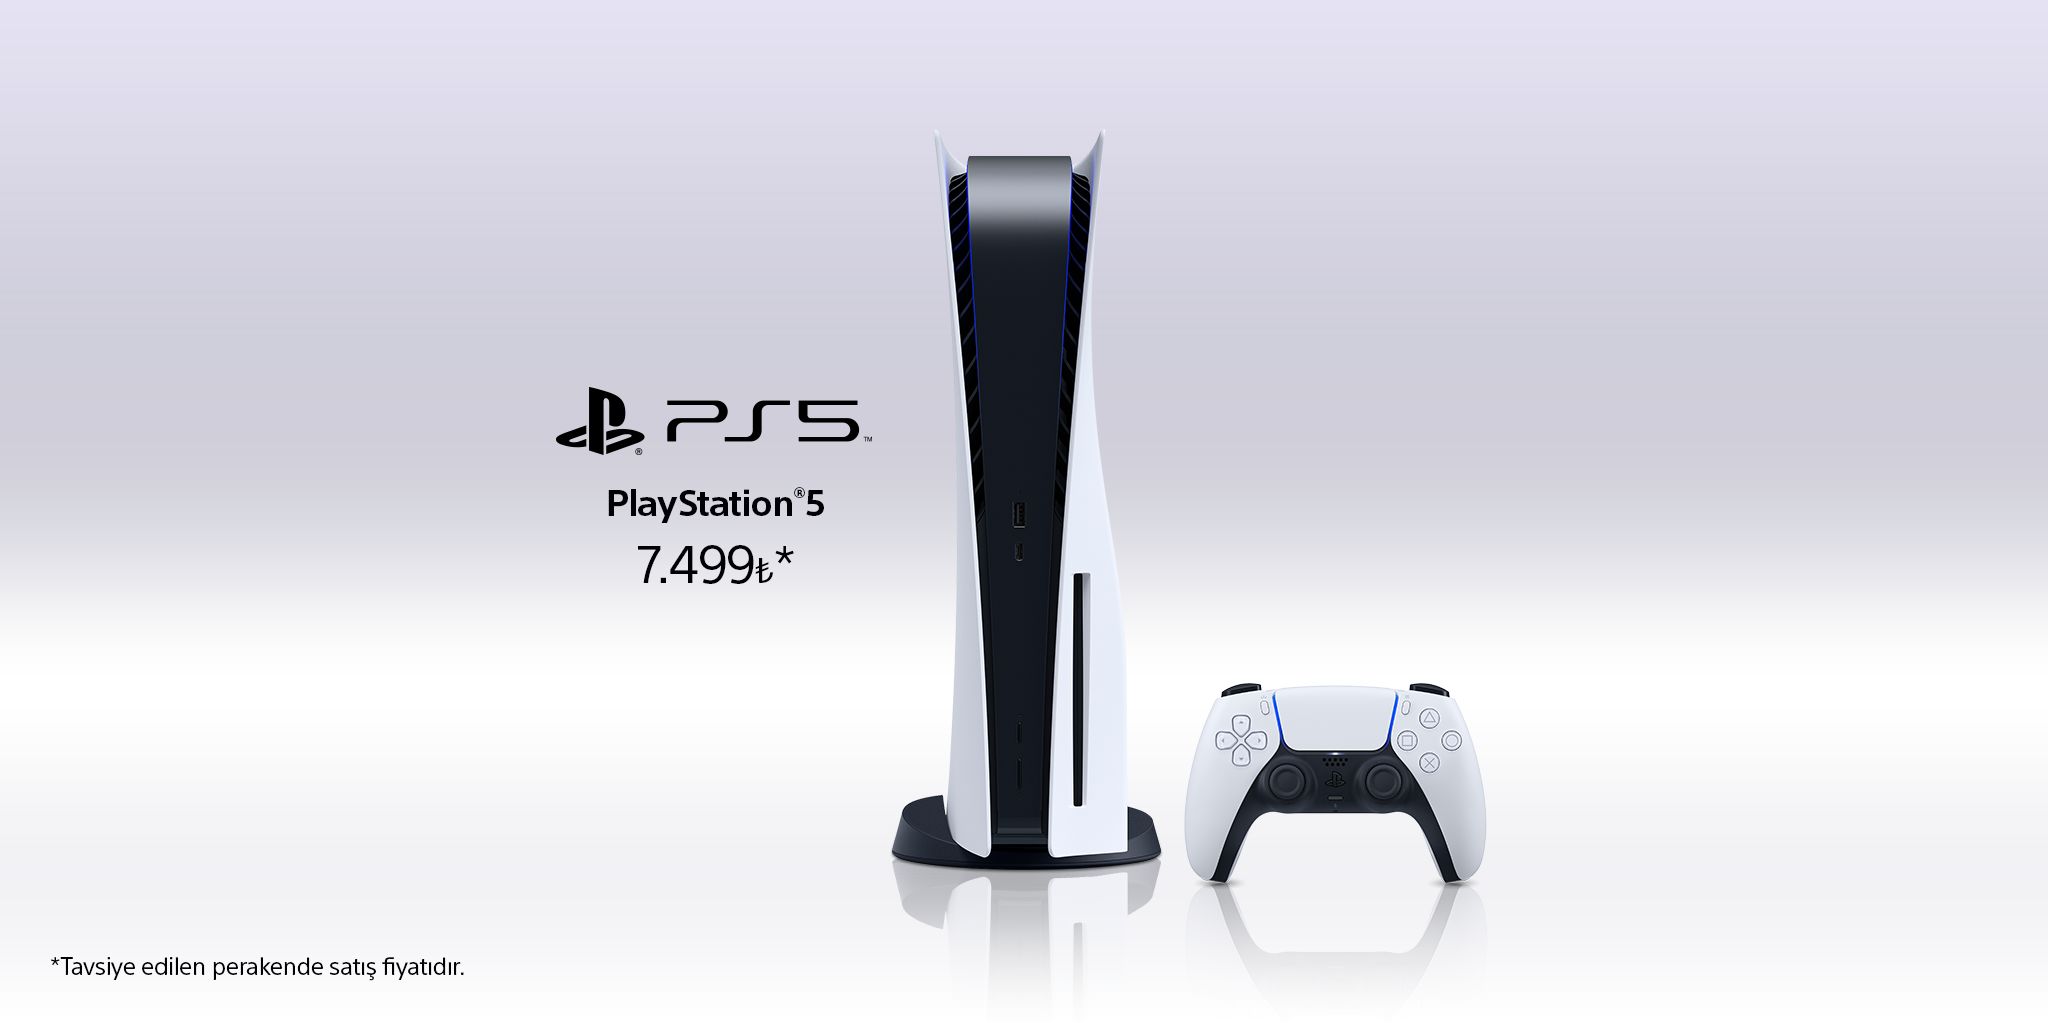 PlayStation 5'in Türkiye fiyatı hakkında açıklama yapıldı